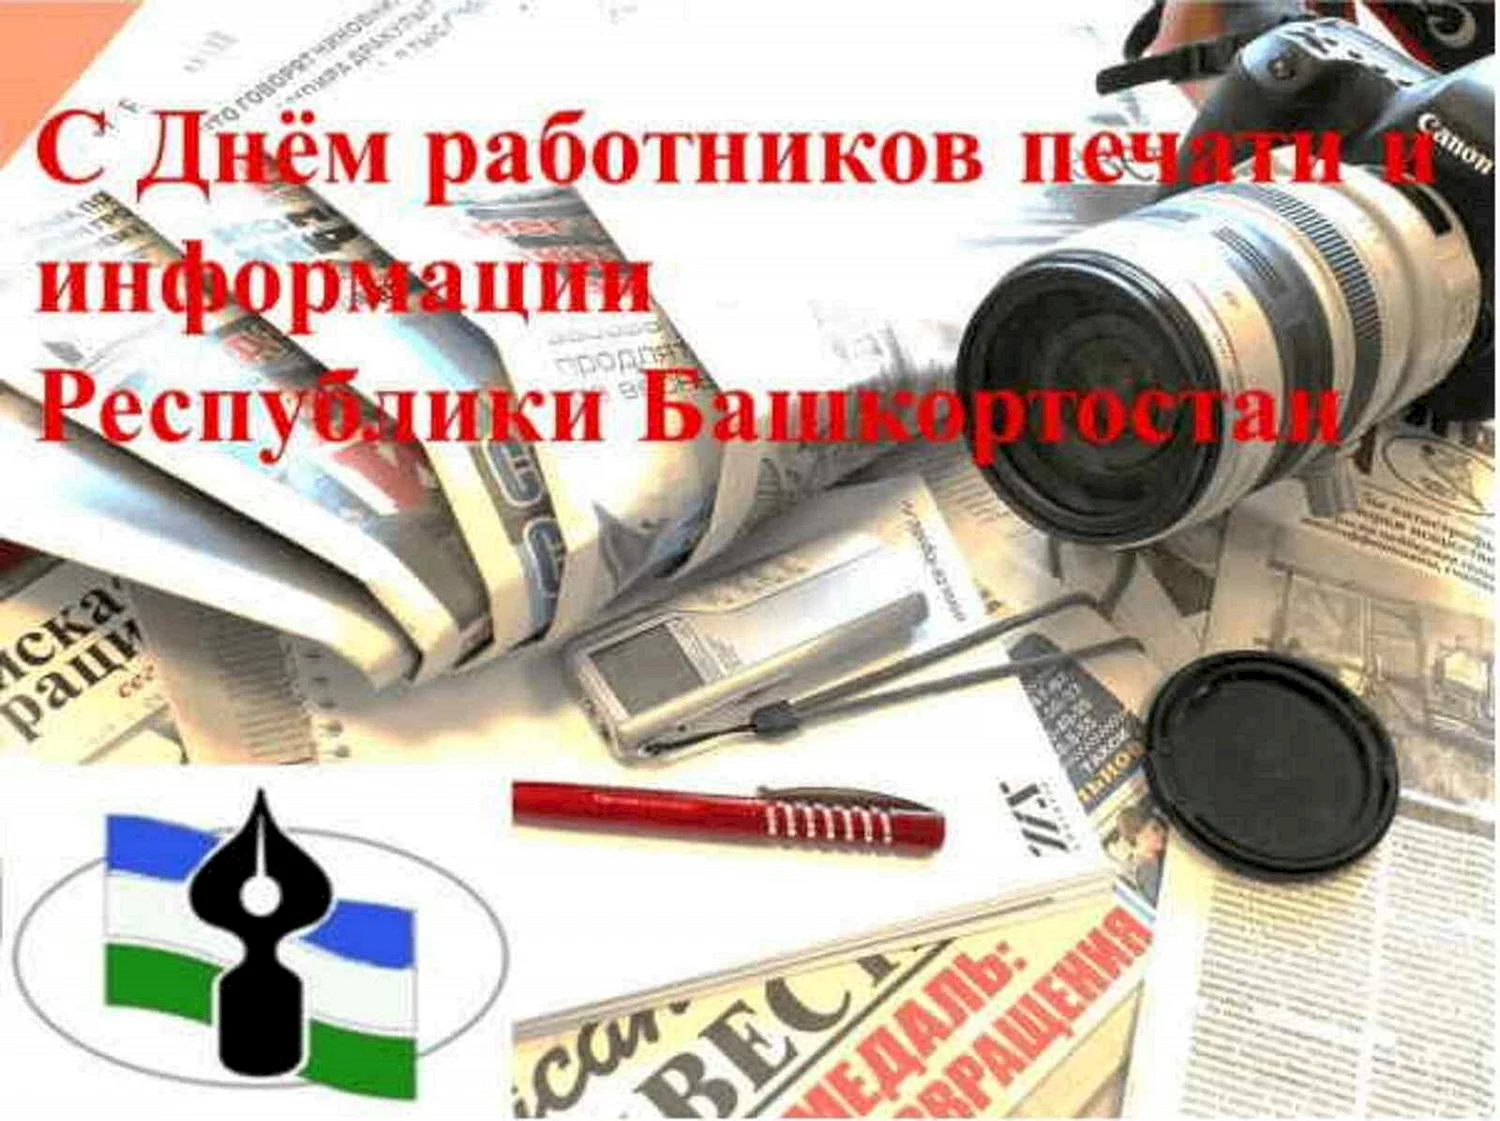 14 Июня день работников печати и информации Республики Башкортостан